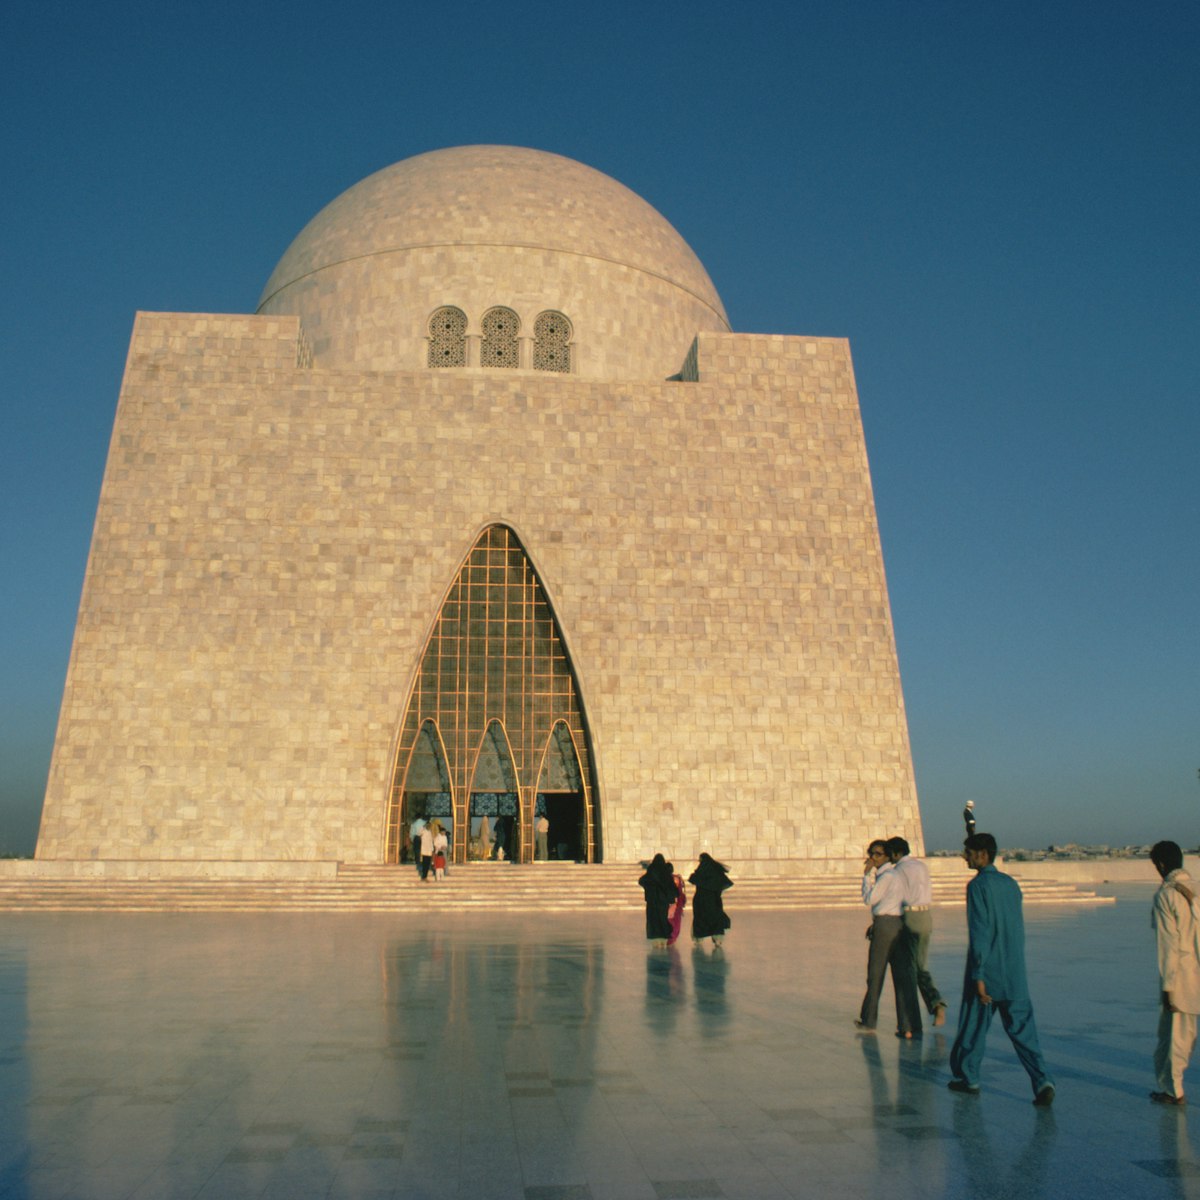 Quaid-i-Azam Mausoleum